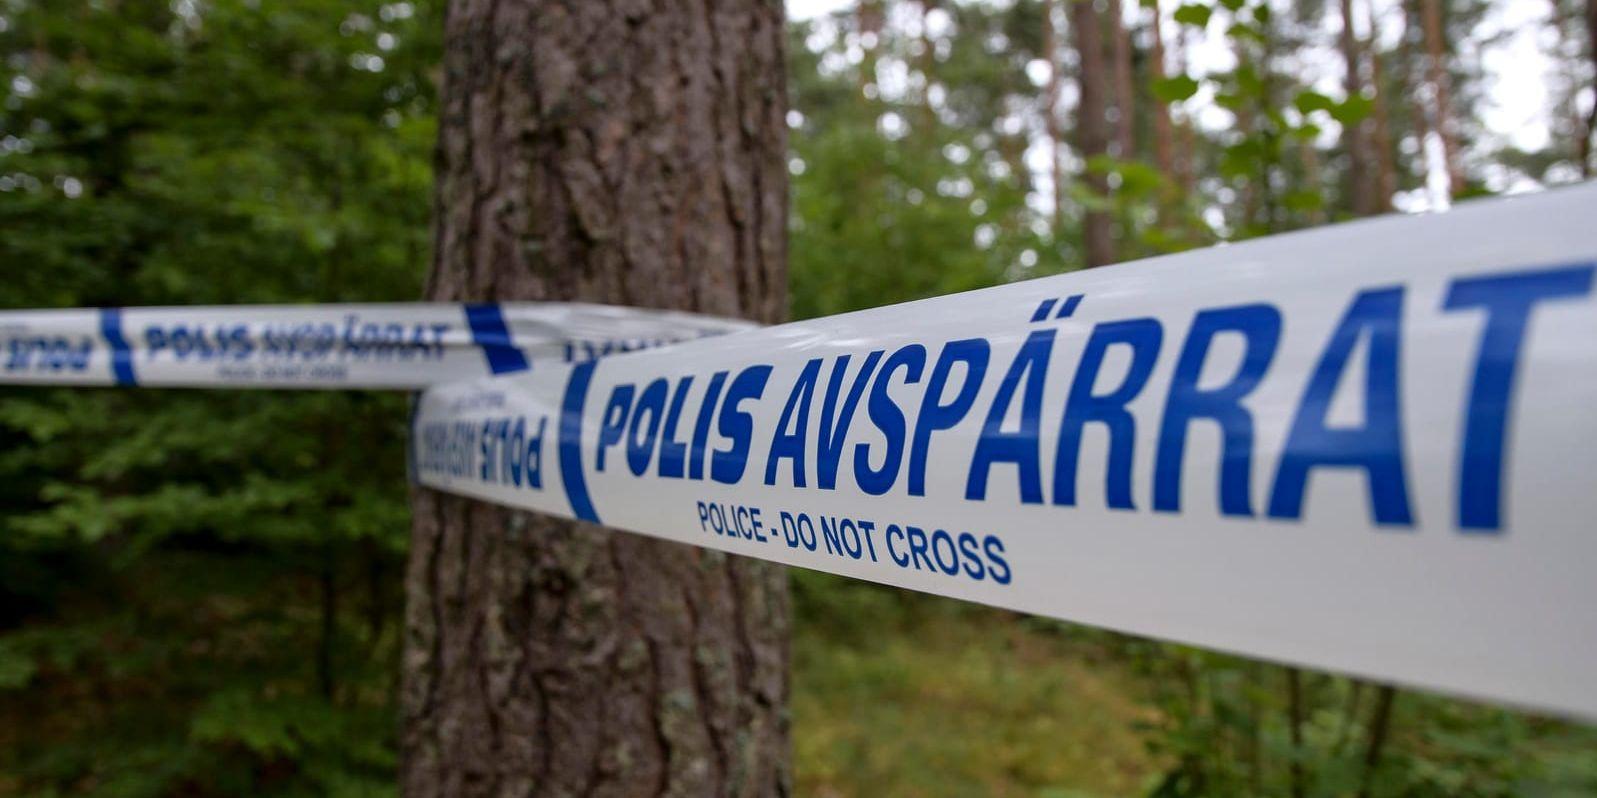 Det sista livstecknet från offret är från den 25 oktober 2018. I december hittades kroppen styckad, vid sjön Flaten i Sköndal i södra Stockholm.